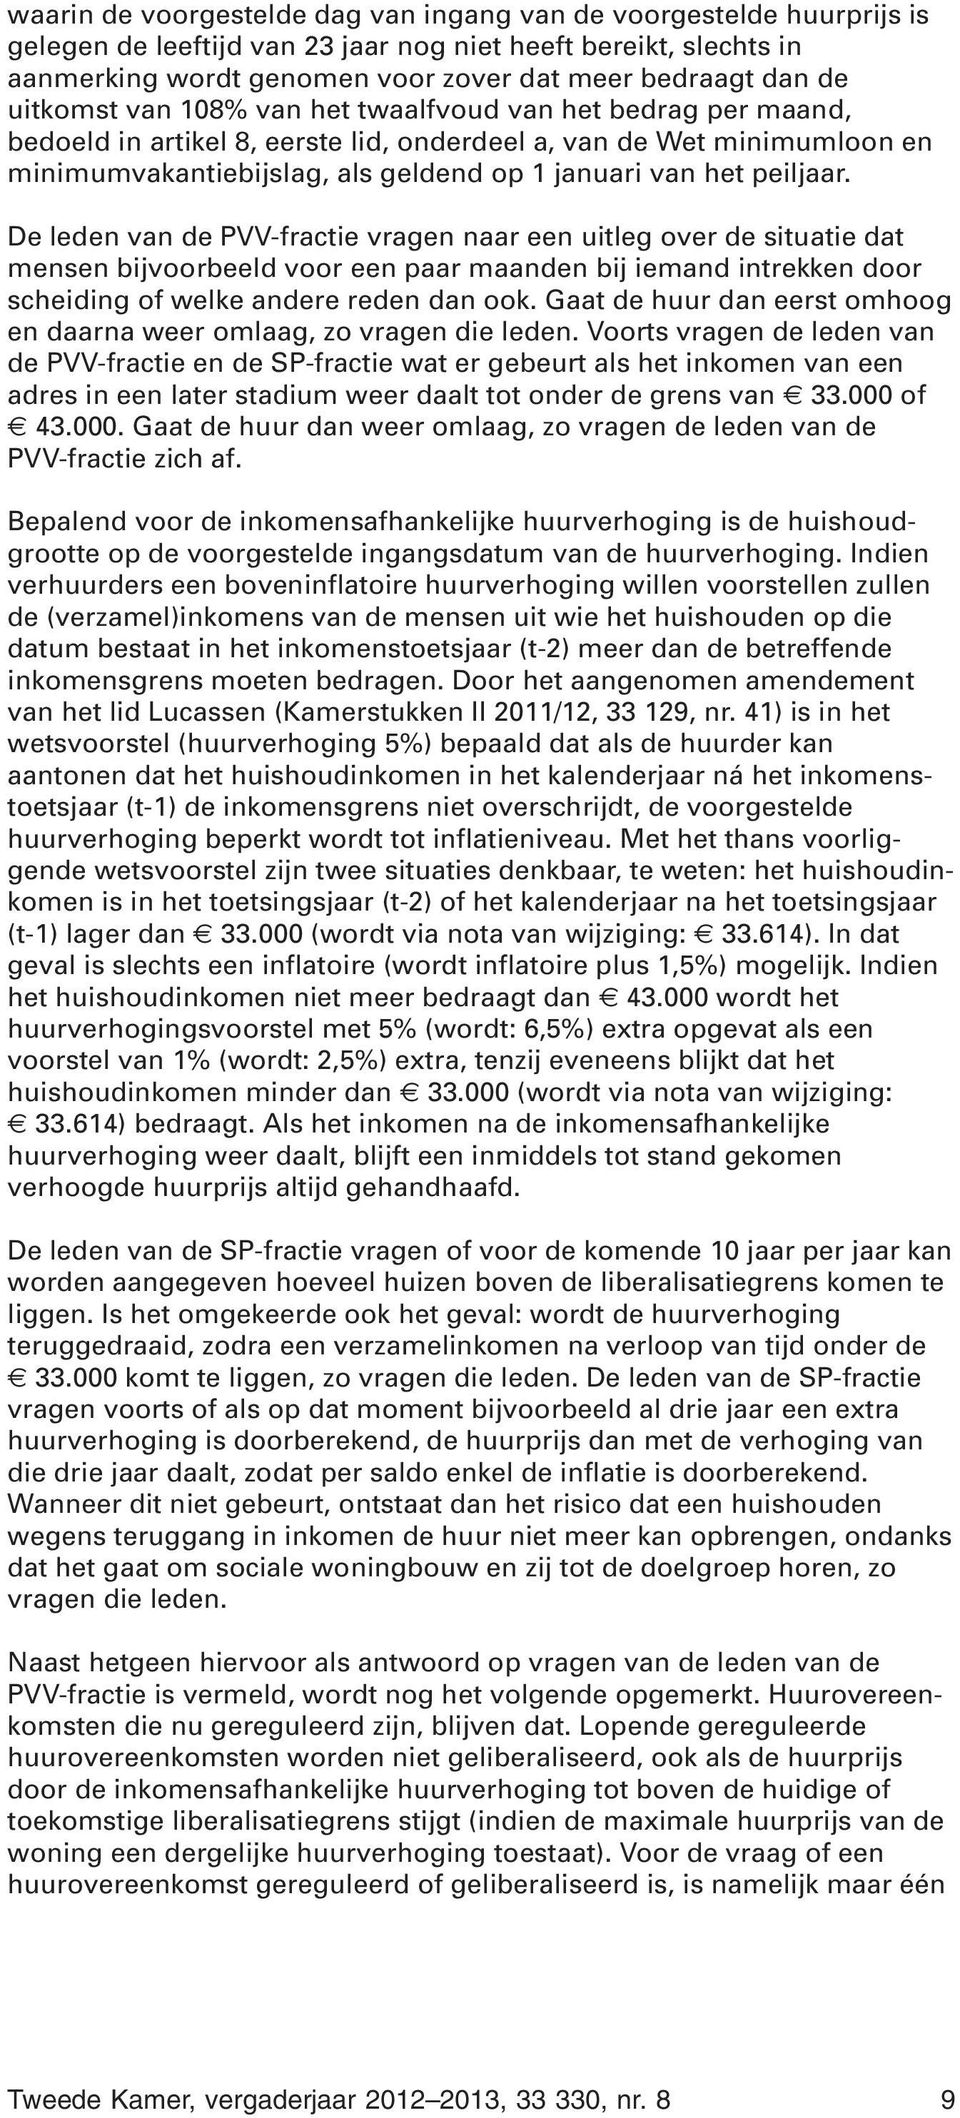 peiljaar. De leden van de PVV-fractie vragen naar een uitleg over de situatie dat mensen bijvoorbeeld voor een paar maanden bij iemand intrekken door scheiding of welke andere reden dan ook.